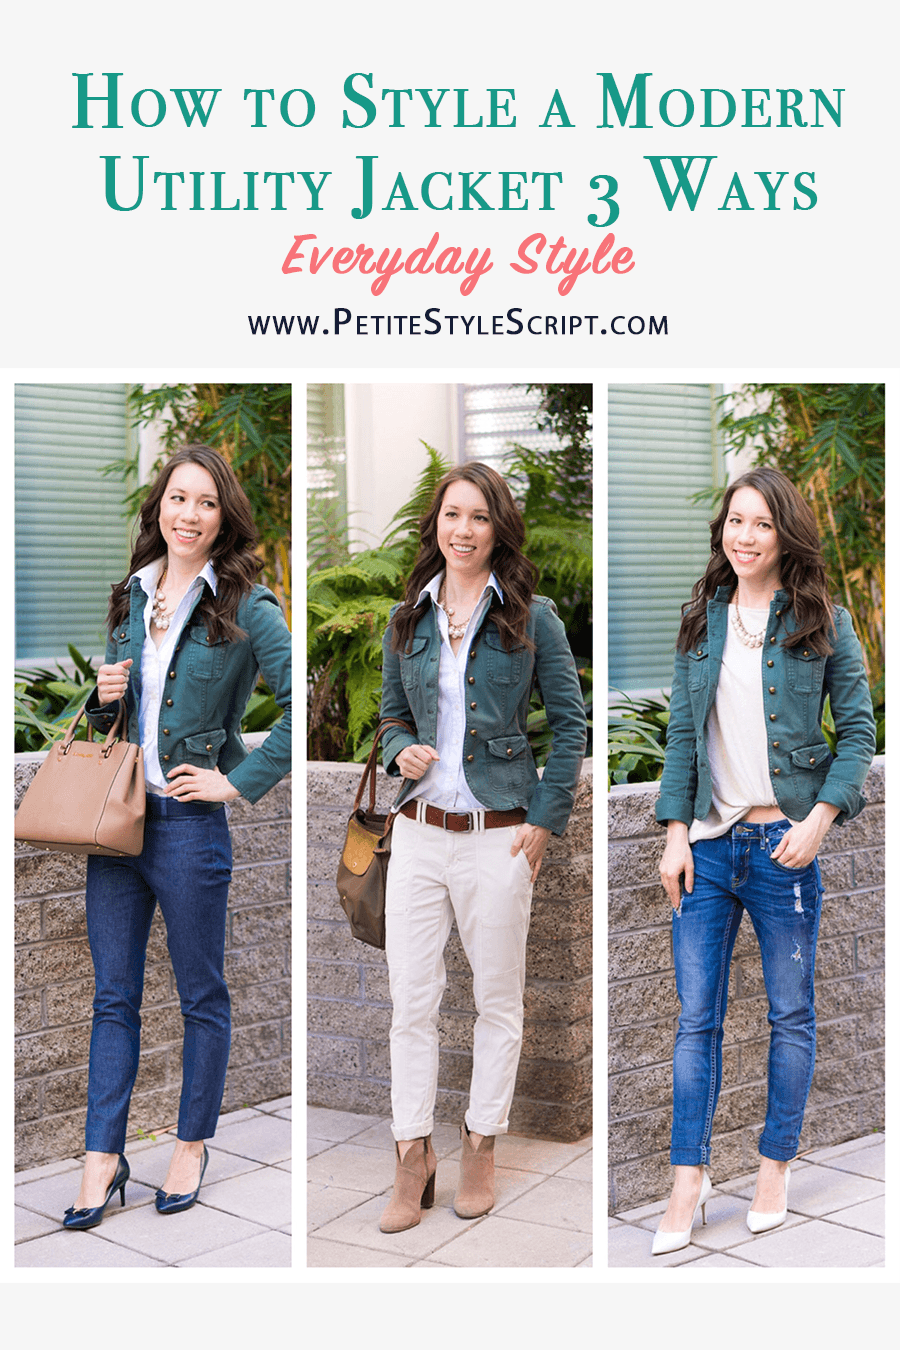 Stylish Ways to Wear a Blazer Jacket [with Images]